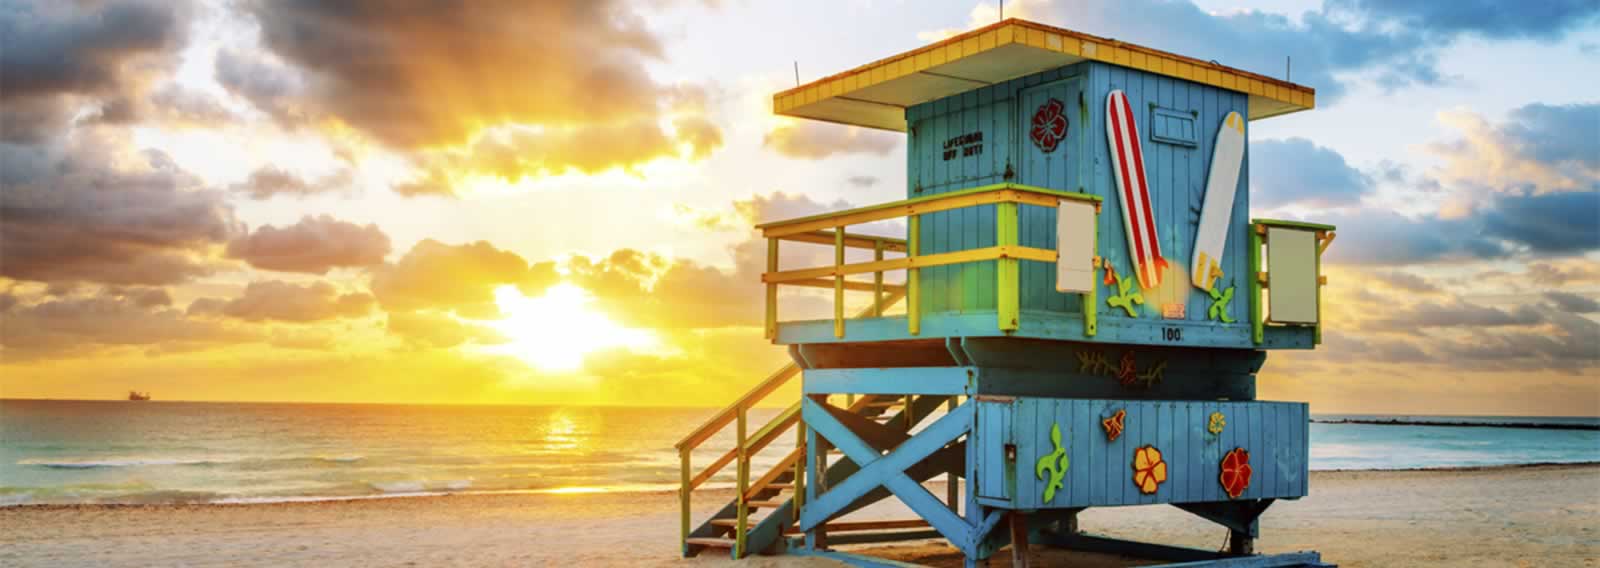 Miami-beaches-1600×568